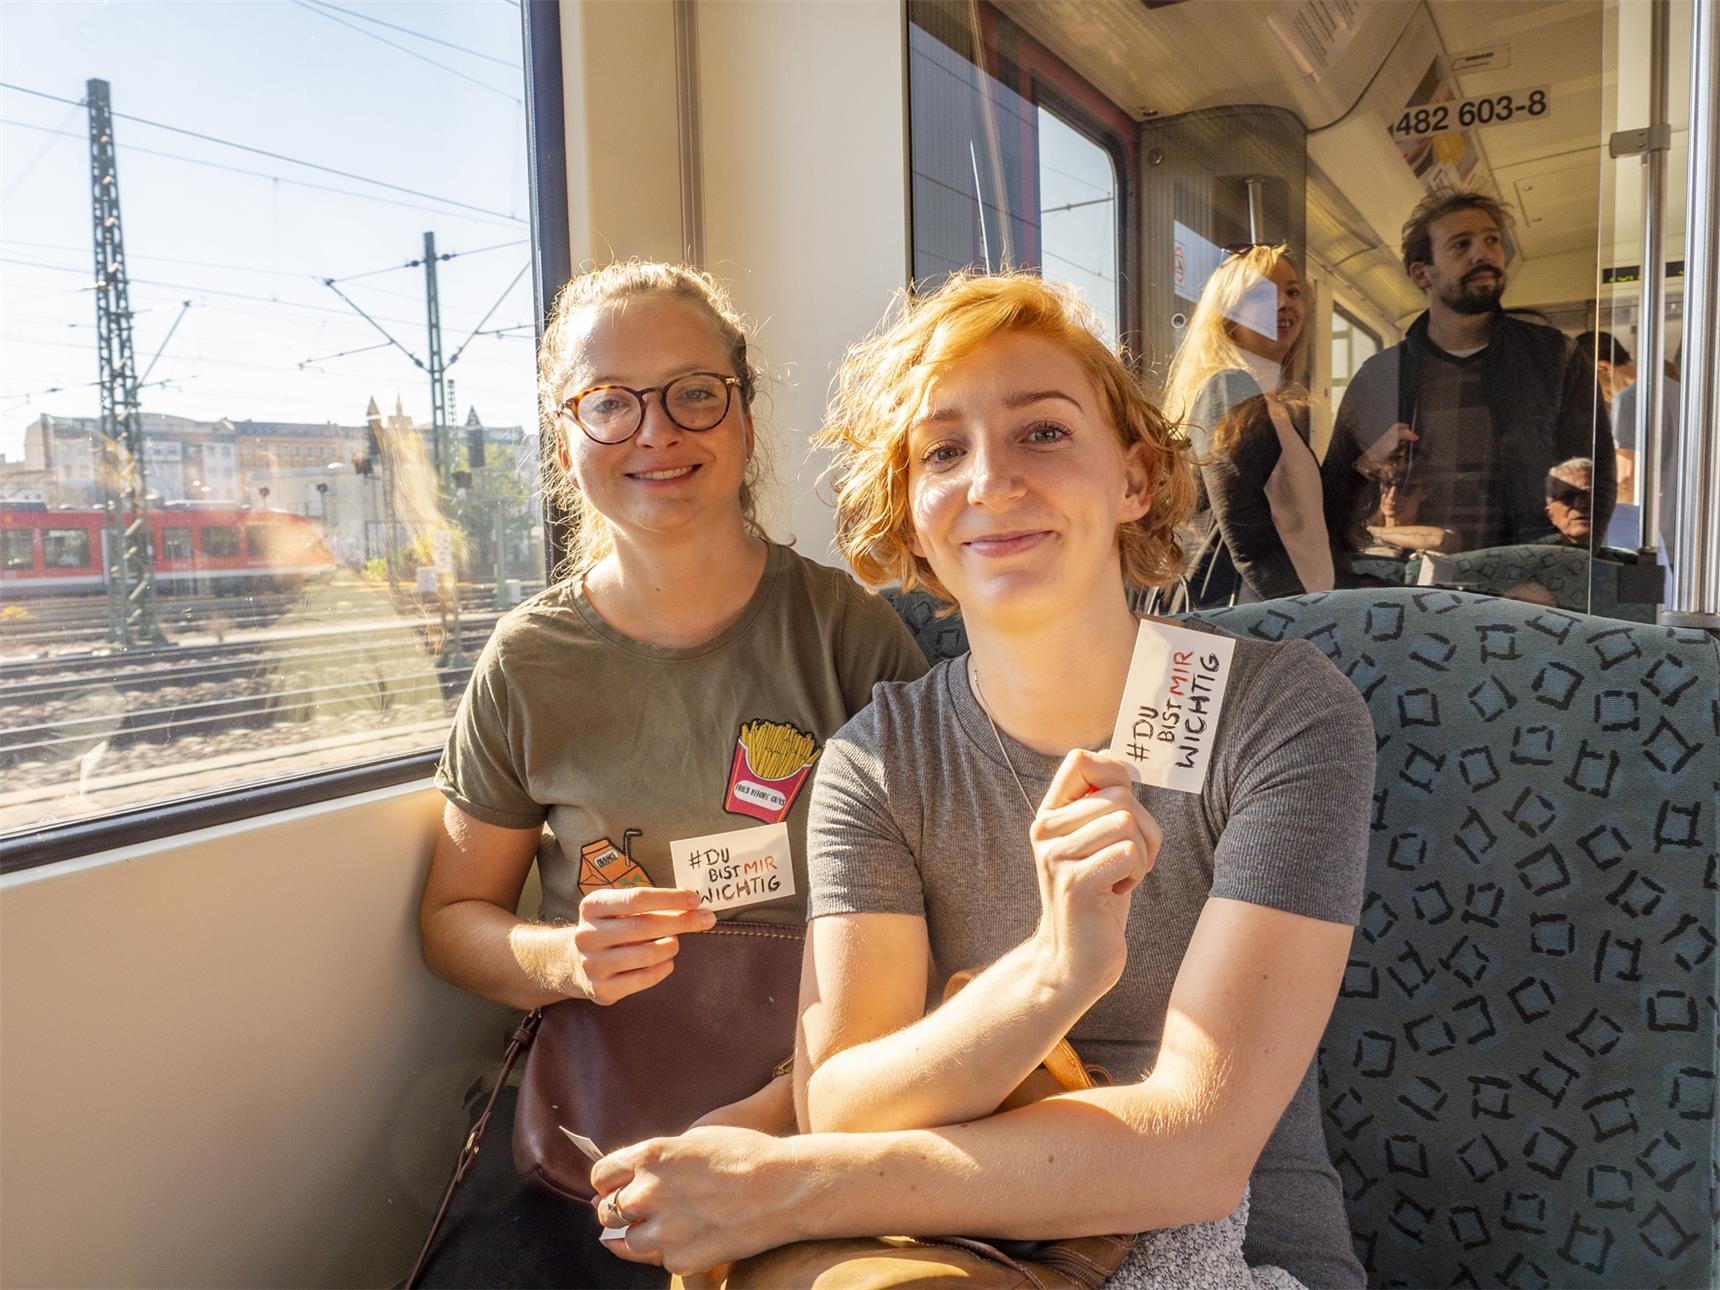 Zwei junge Frauen im Zug mit dem Aufkleber "Du bist mir wichtig" (Angela Kröll)